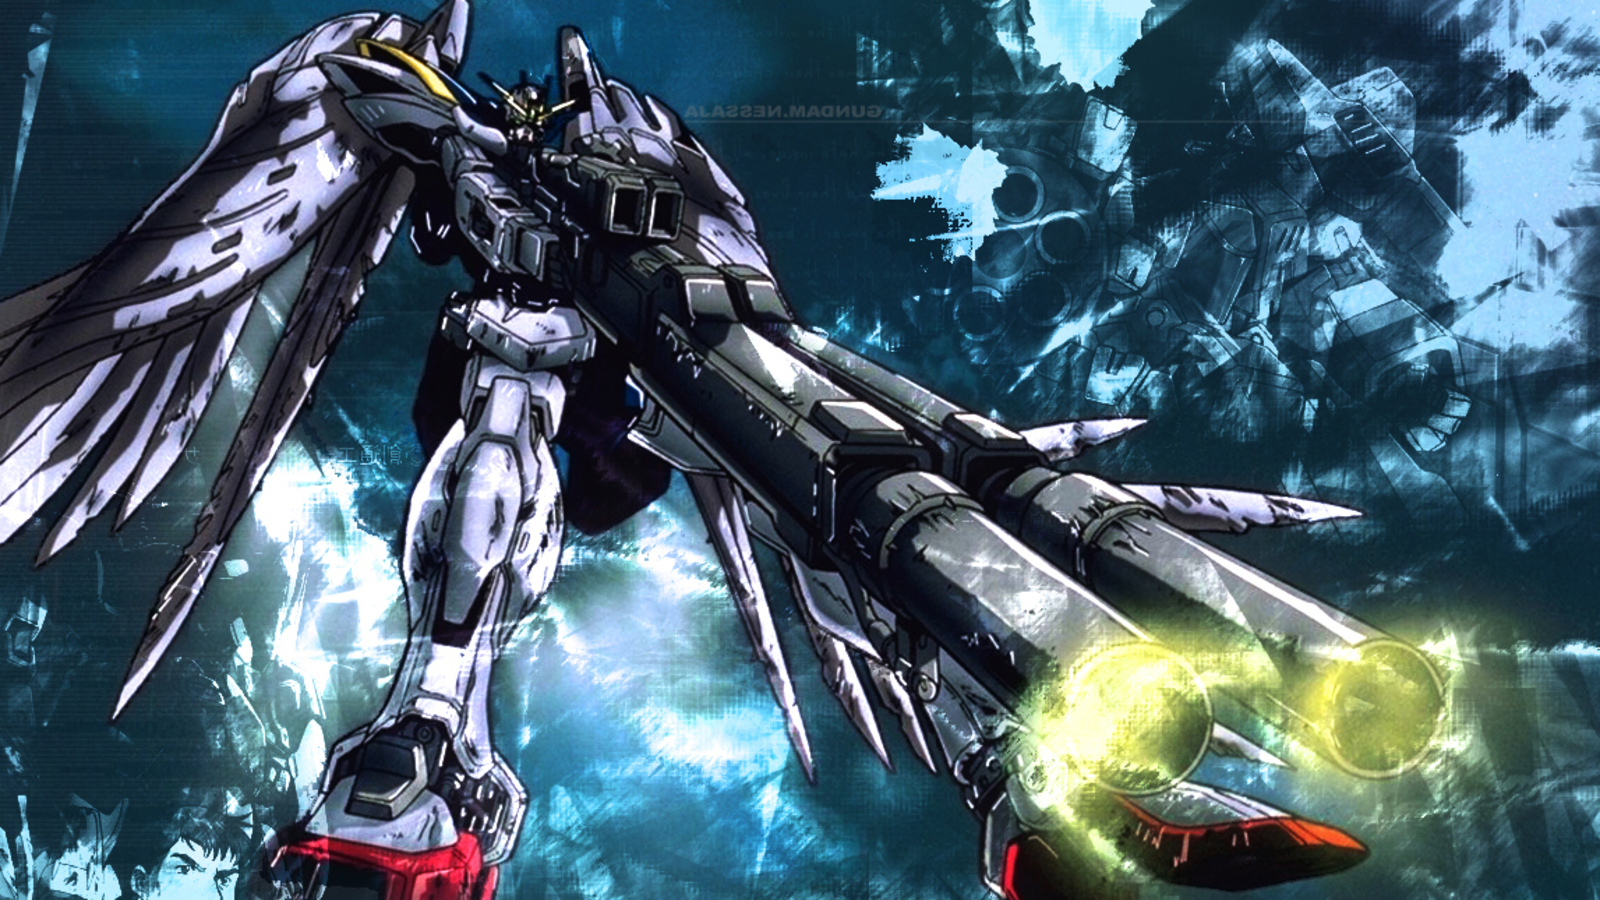 Gundam Hd Wallpapers Gundam Wing Wallpaper 4k Hd Wallpaper Backgrounds Download